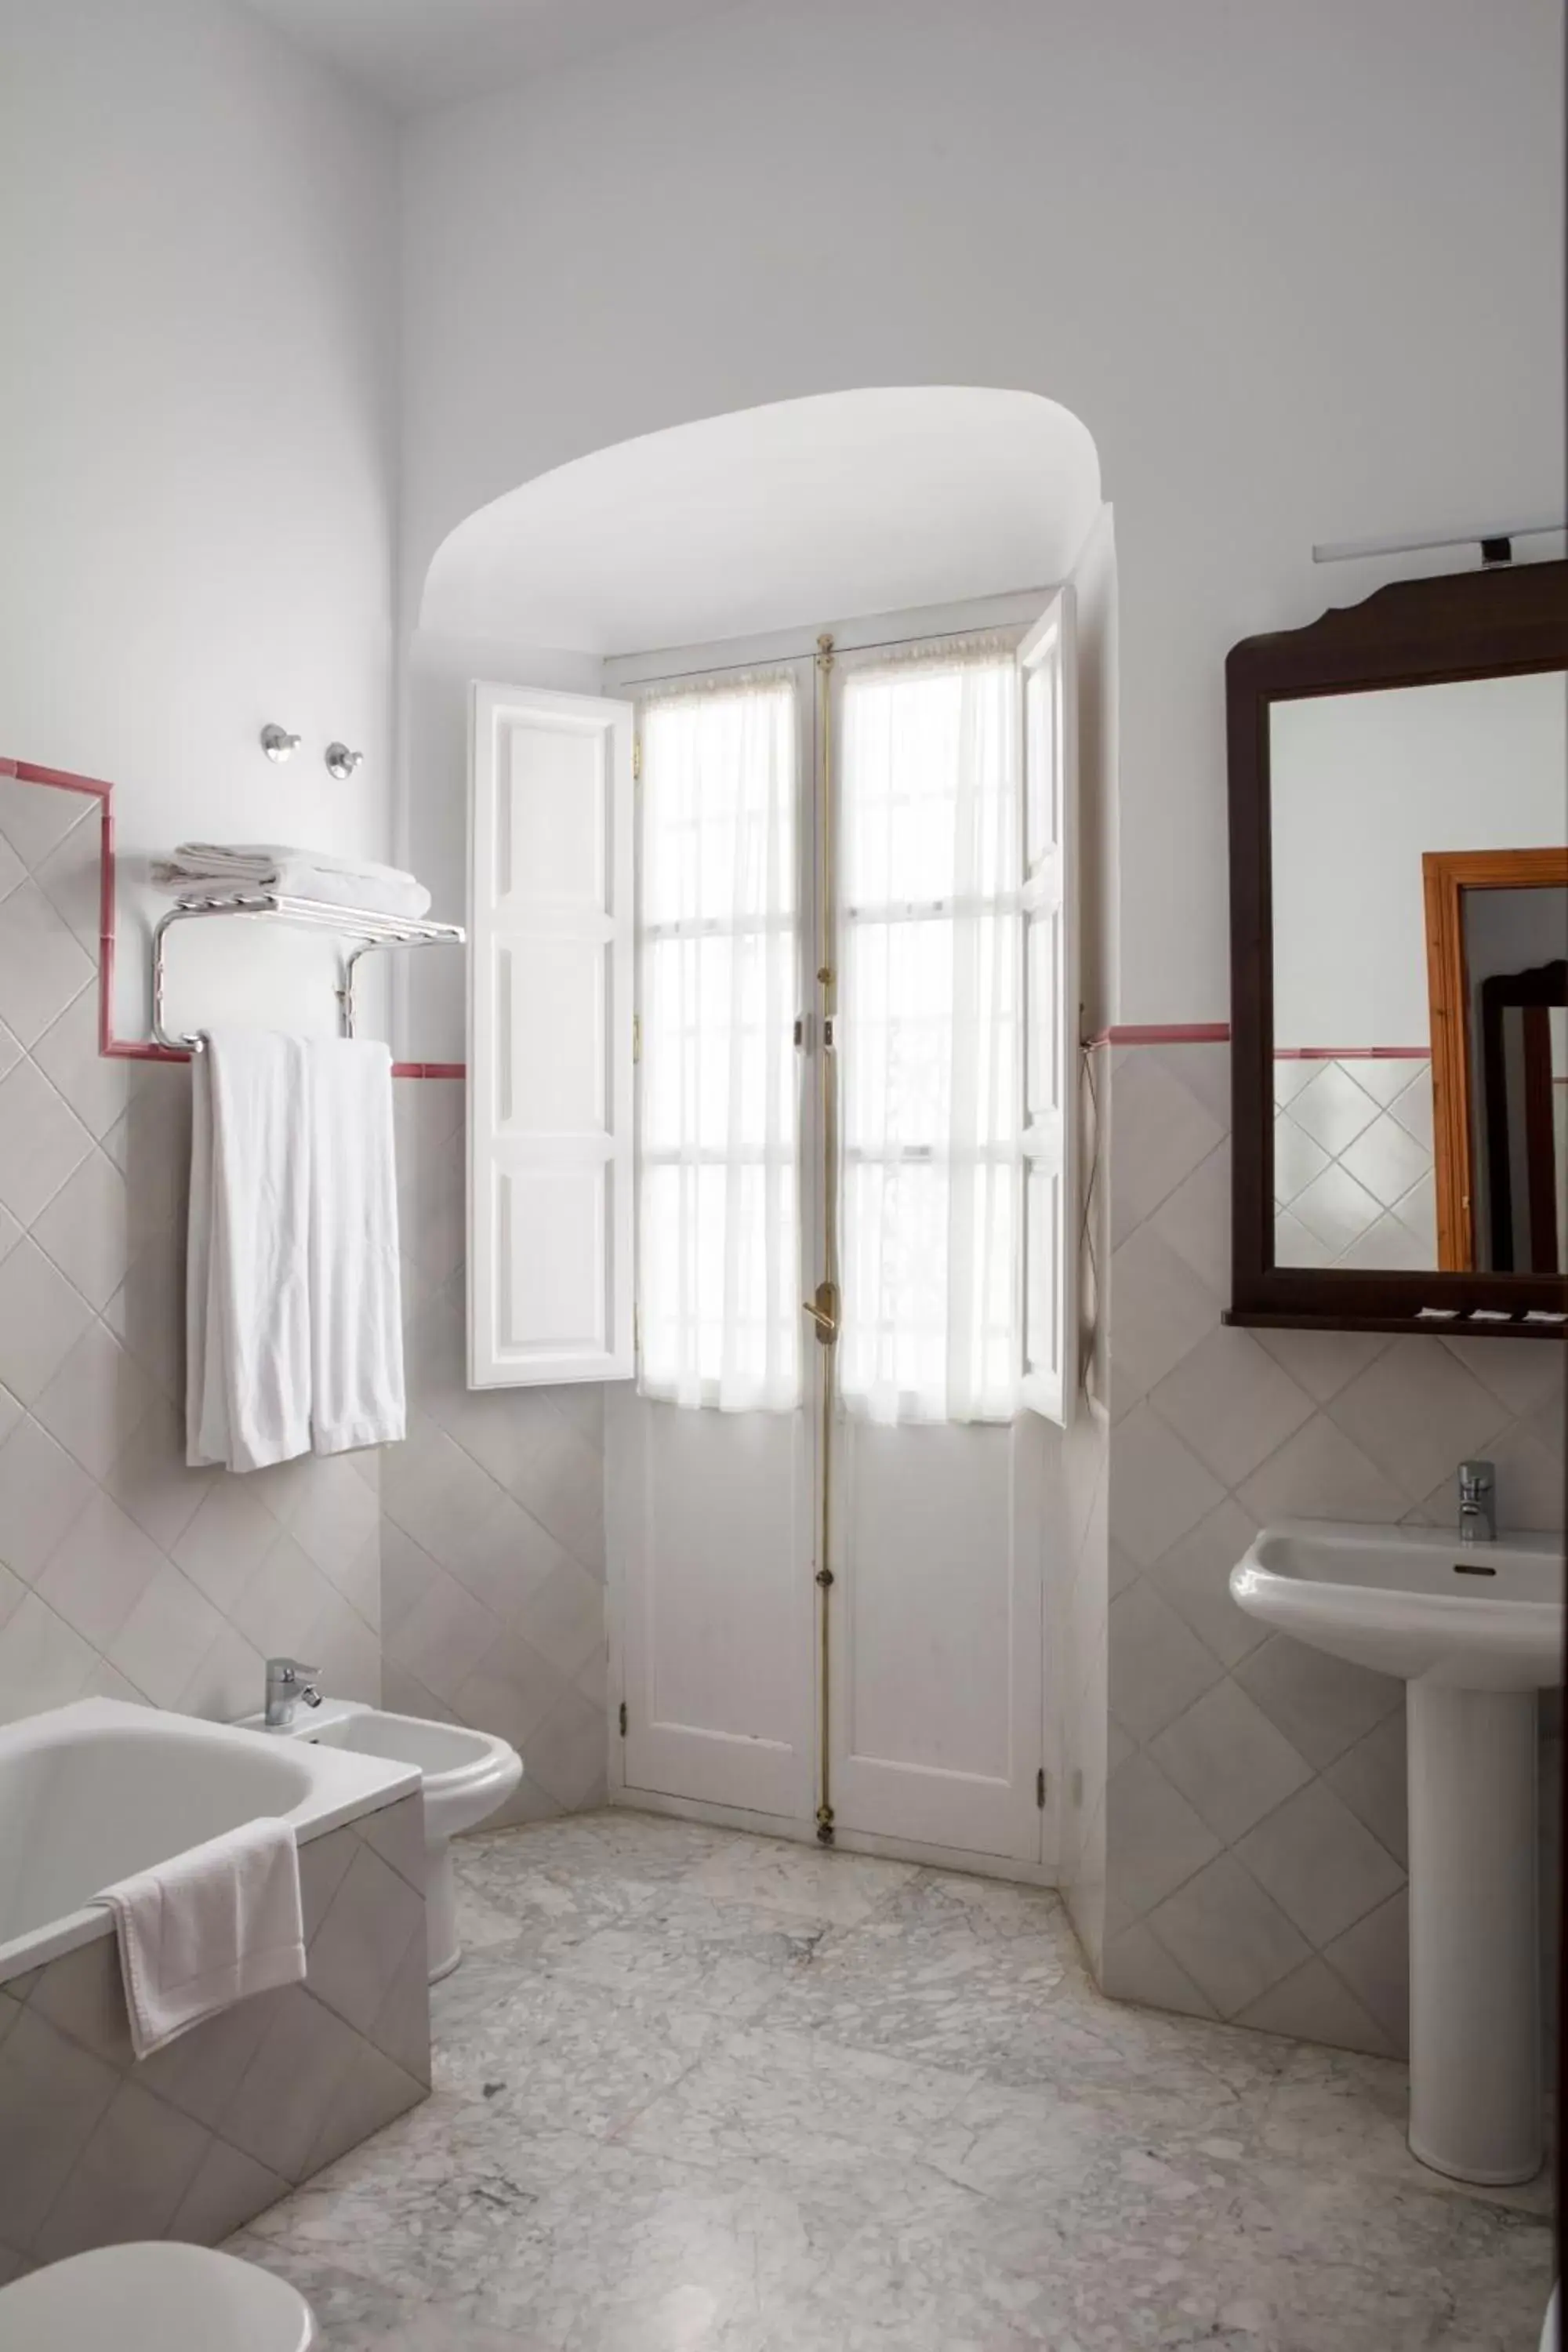 Bathroom in Tugasa Medina Sidonia